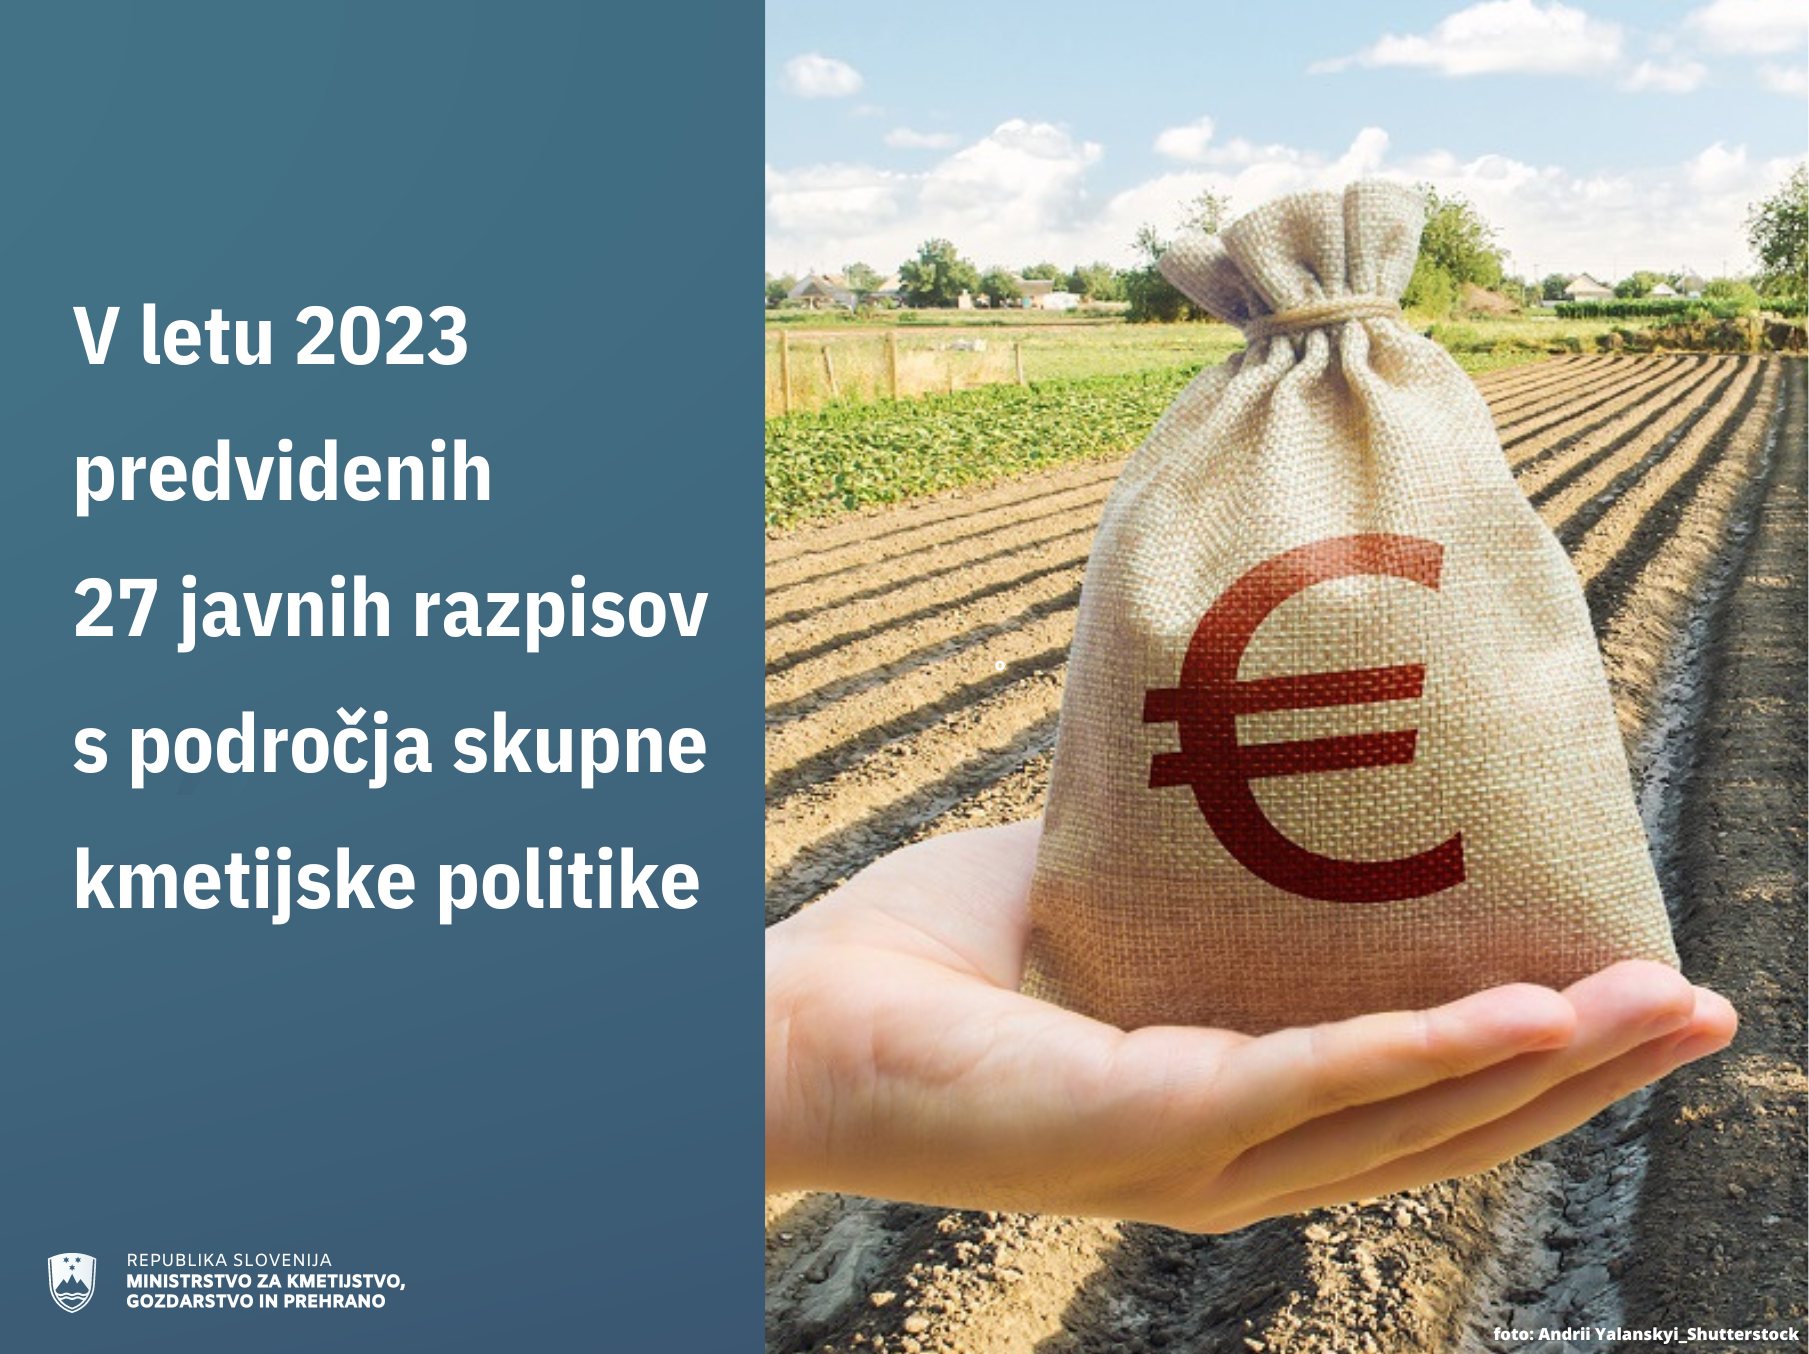 Denar v ozadju kmetijsko polje - simbolna fotografija. Na levi napis V letu 2023 predvidenih 27 javnih razpisov s področja skupne kmetijske politike.